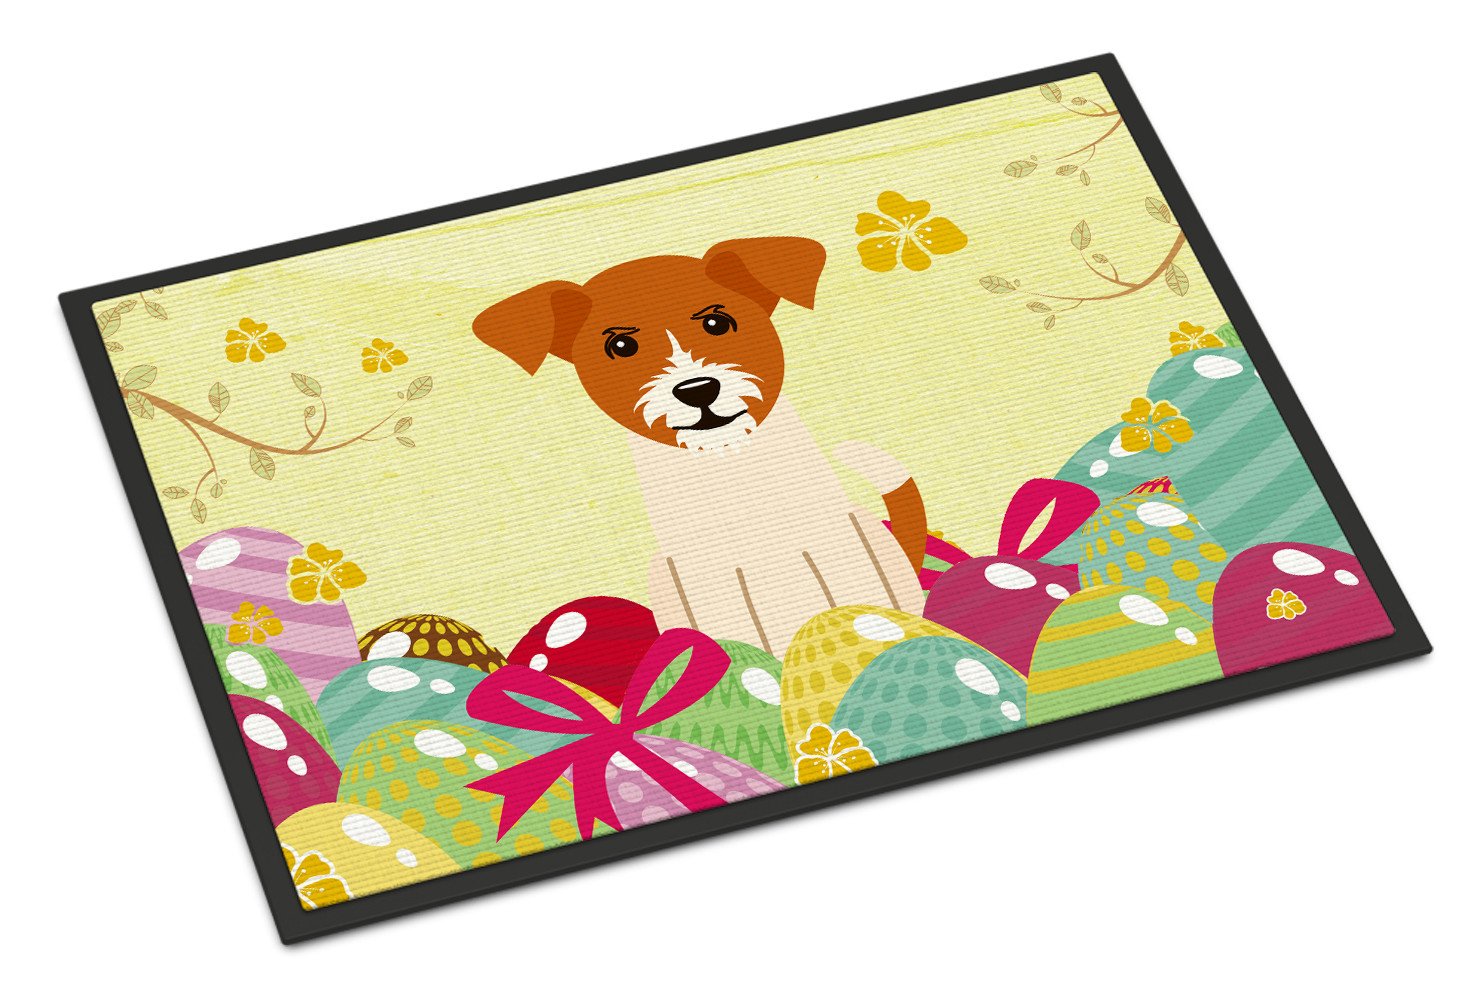 Easter Eggs Jack Russell Terrier Indoor or Outdoor Mat 24x36 BB6108JMAT by Caroline's Treasures